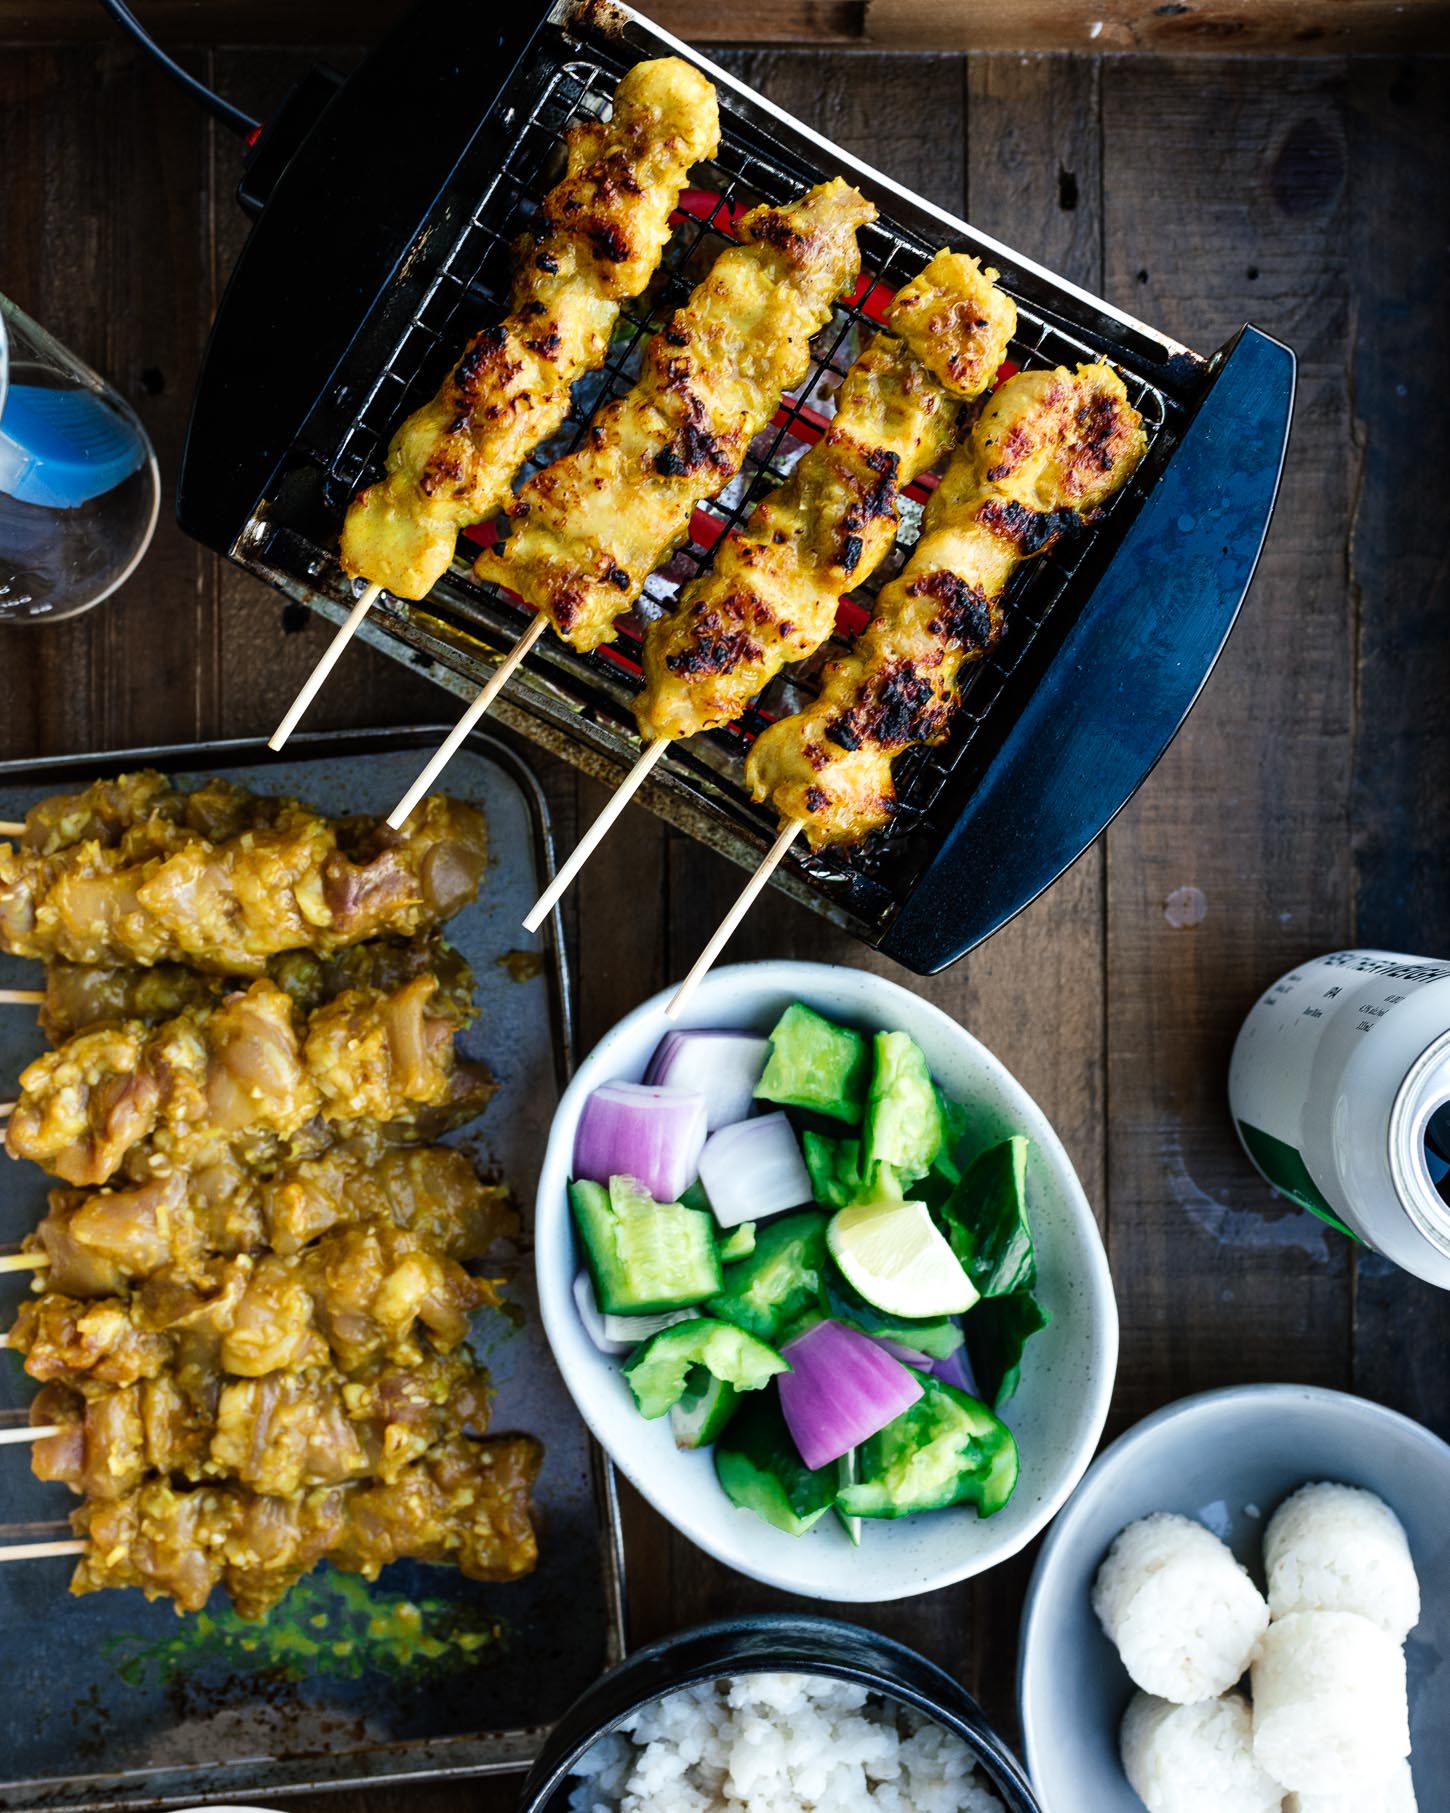 Auténtica receta de satay de pollo de Malasia: los magníficos pinchos de satay de pollo a la parrilla son perfectos con salsa de maní dulce y picante sin maní.  #pollo #recetas de pollo #recetas #satay #kebabs #thafood #malaysianfood